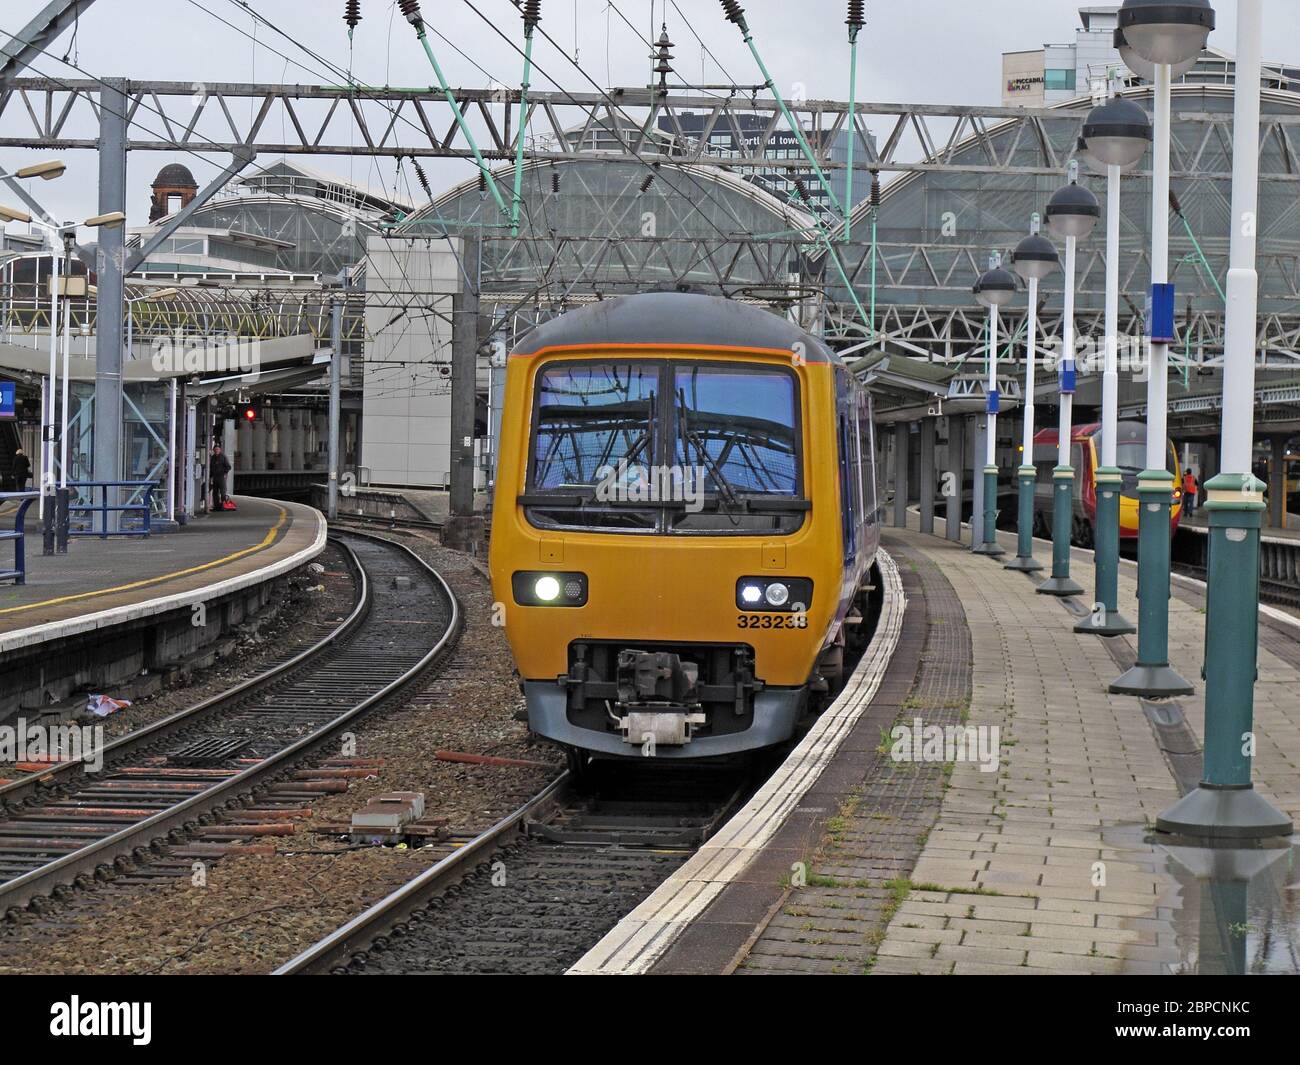 EMU 323238 départ de Manchester Piccadilly Railway station, Lancashire, Angleterre, Royaume-Uni, M60 7RA Banque D'Images